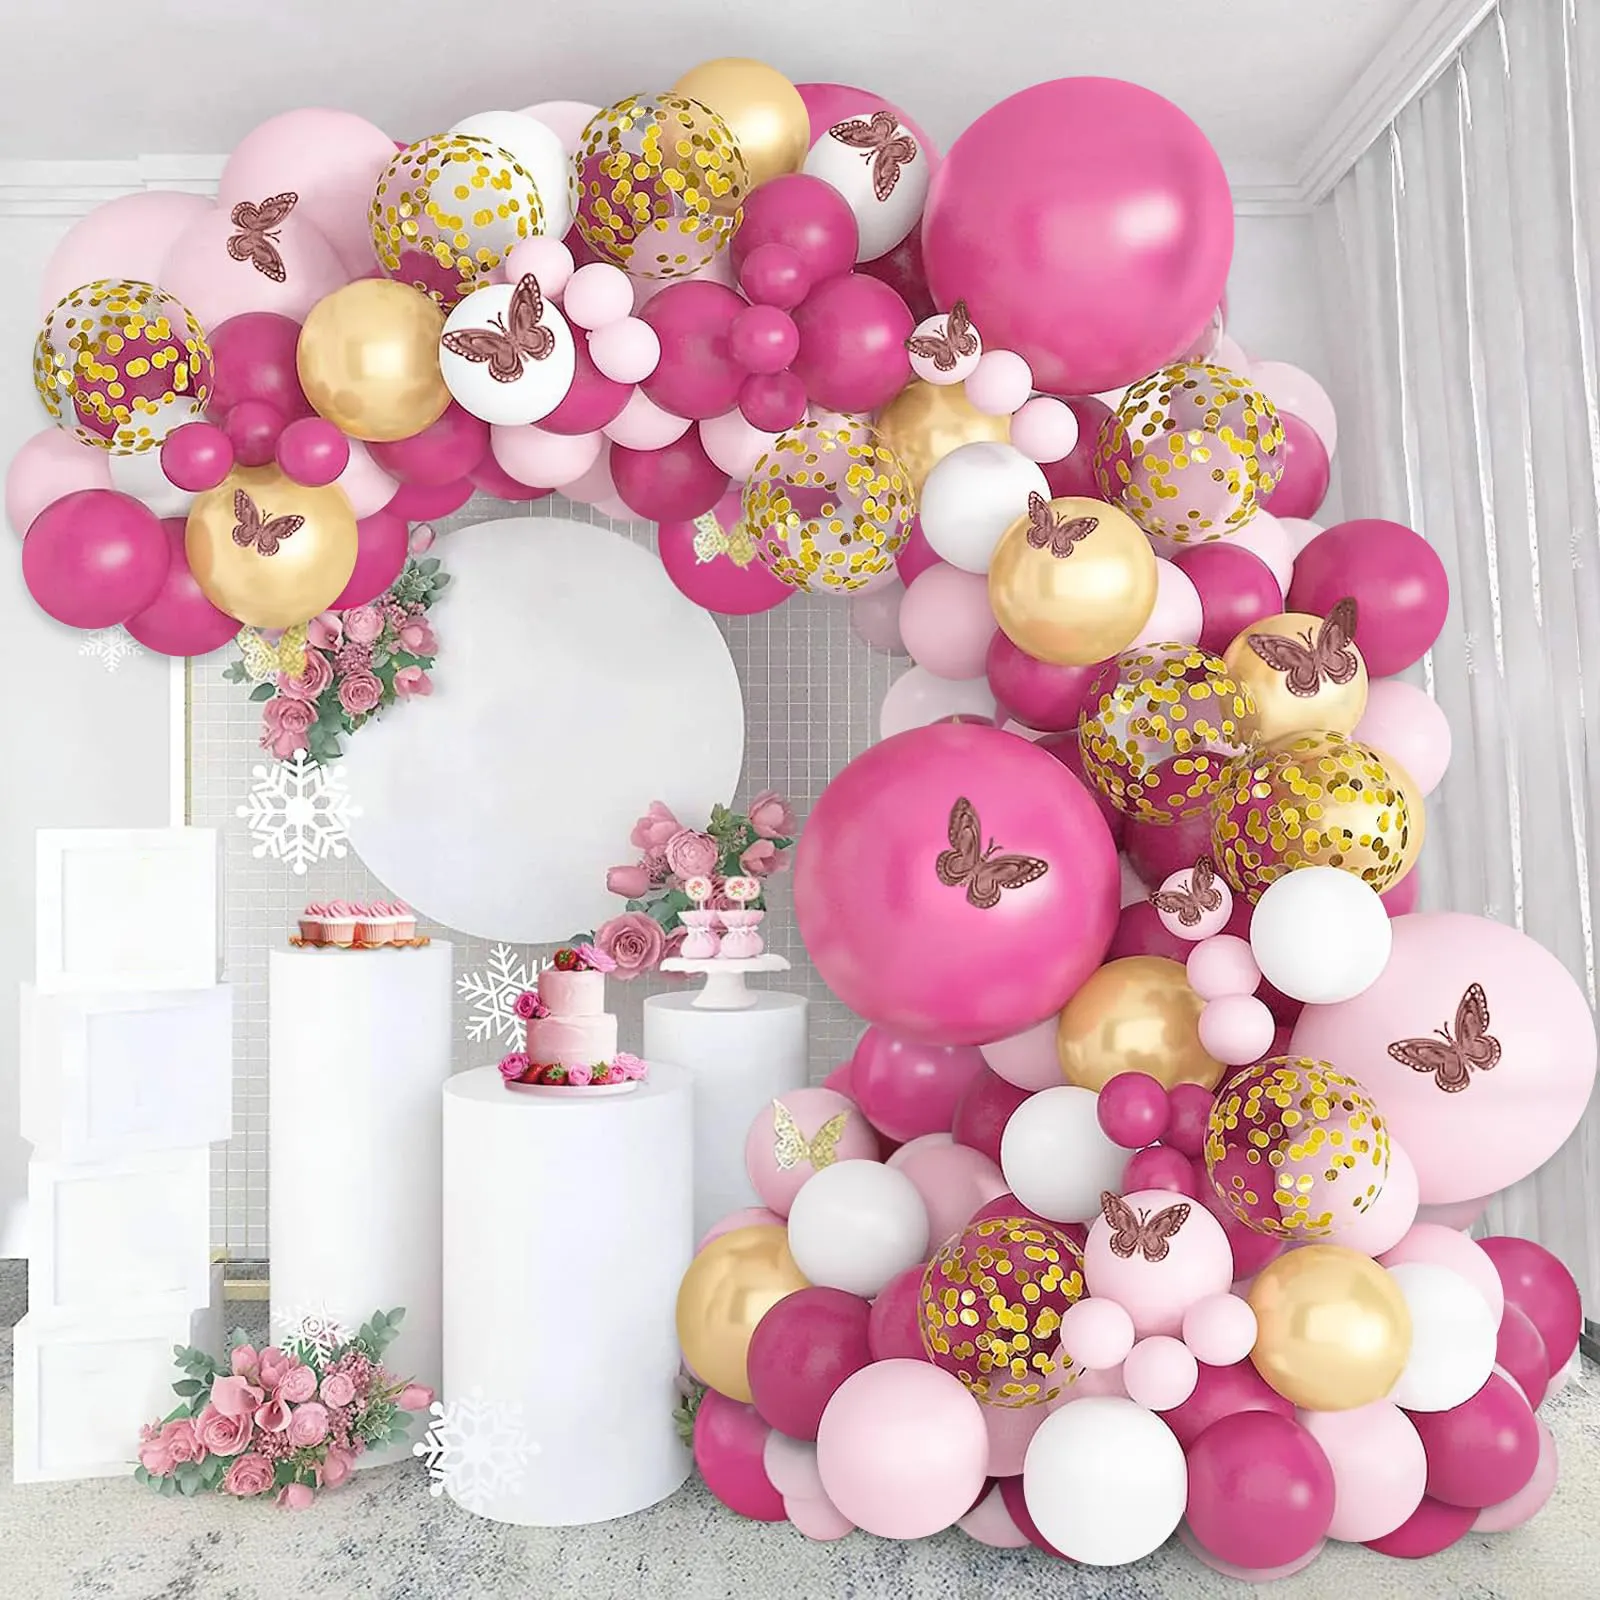 Kit de arco de guirlanda de balão rosa e balões de confete dourado para decoração de festa de casamento, tema de princesa e aniversário, 111 unidades